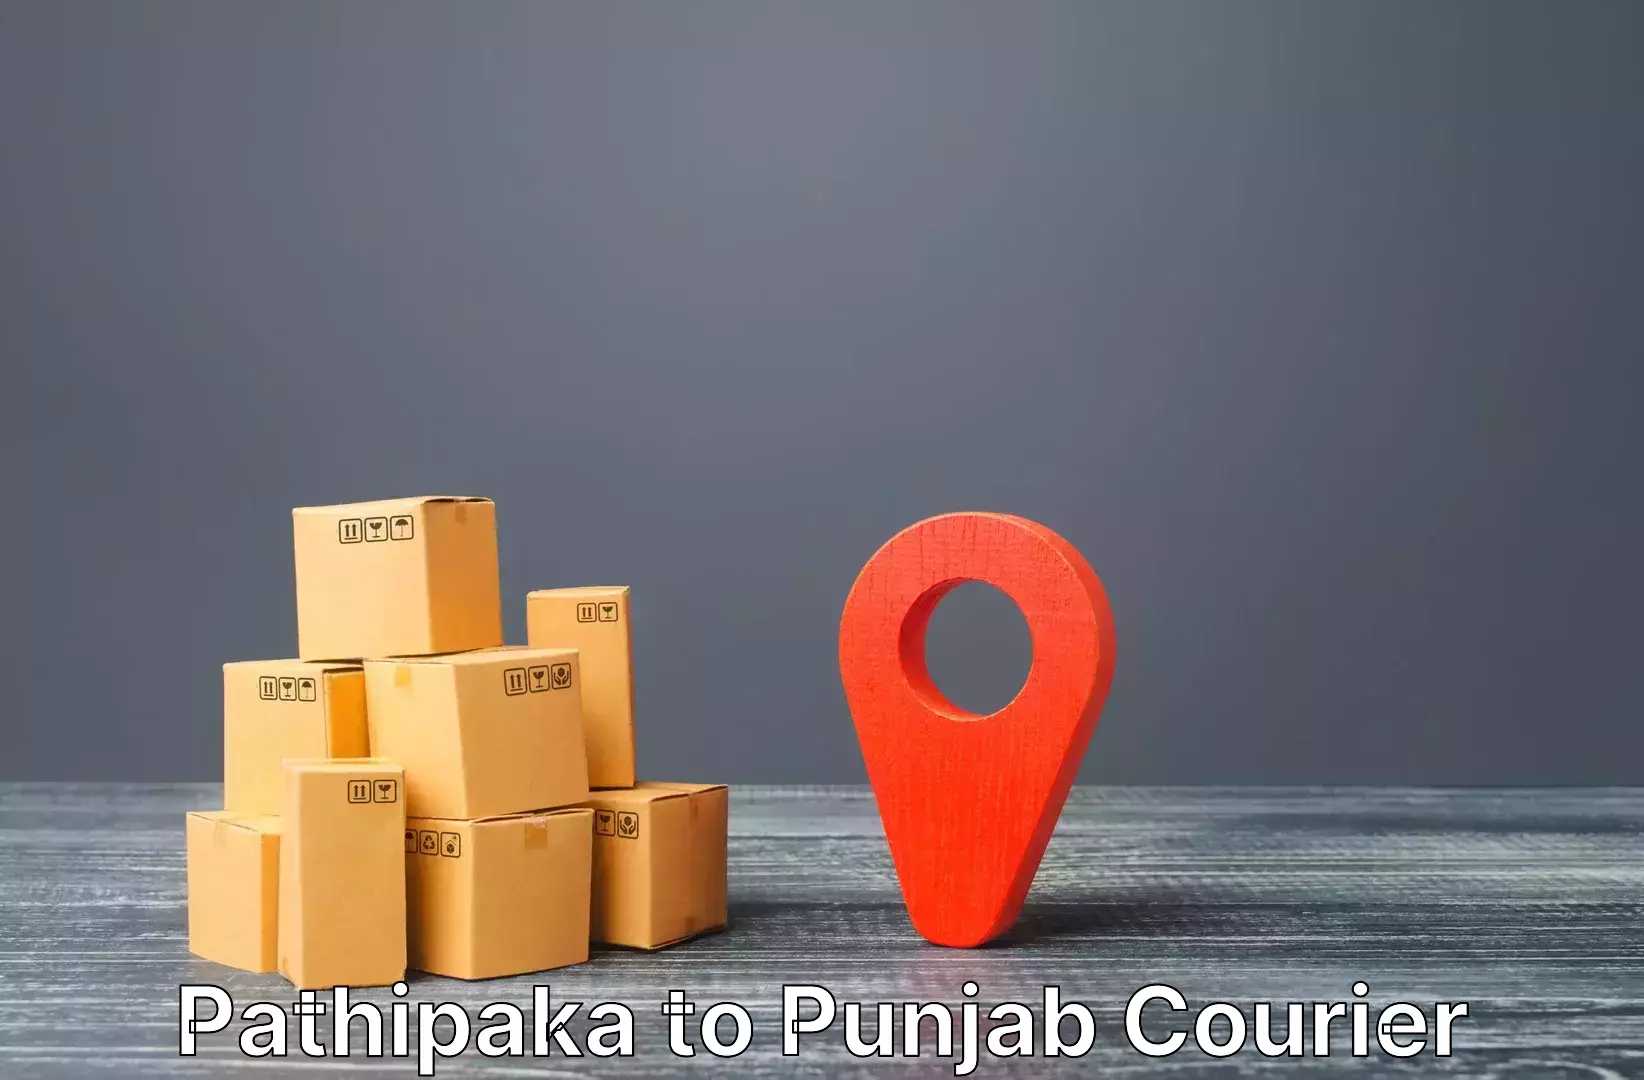 Luggage delivery network Pathipaka to Bathinda